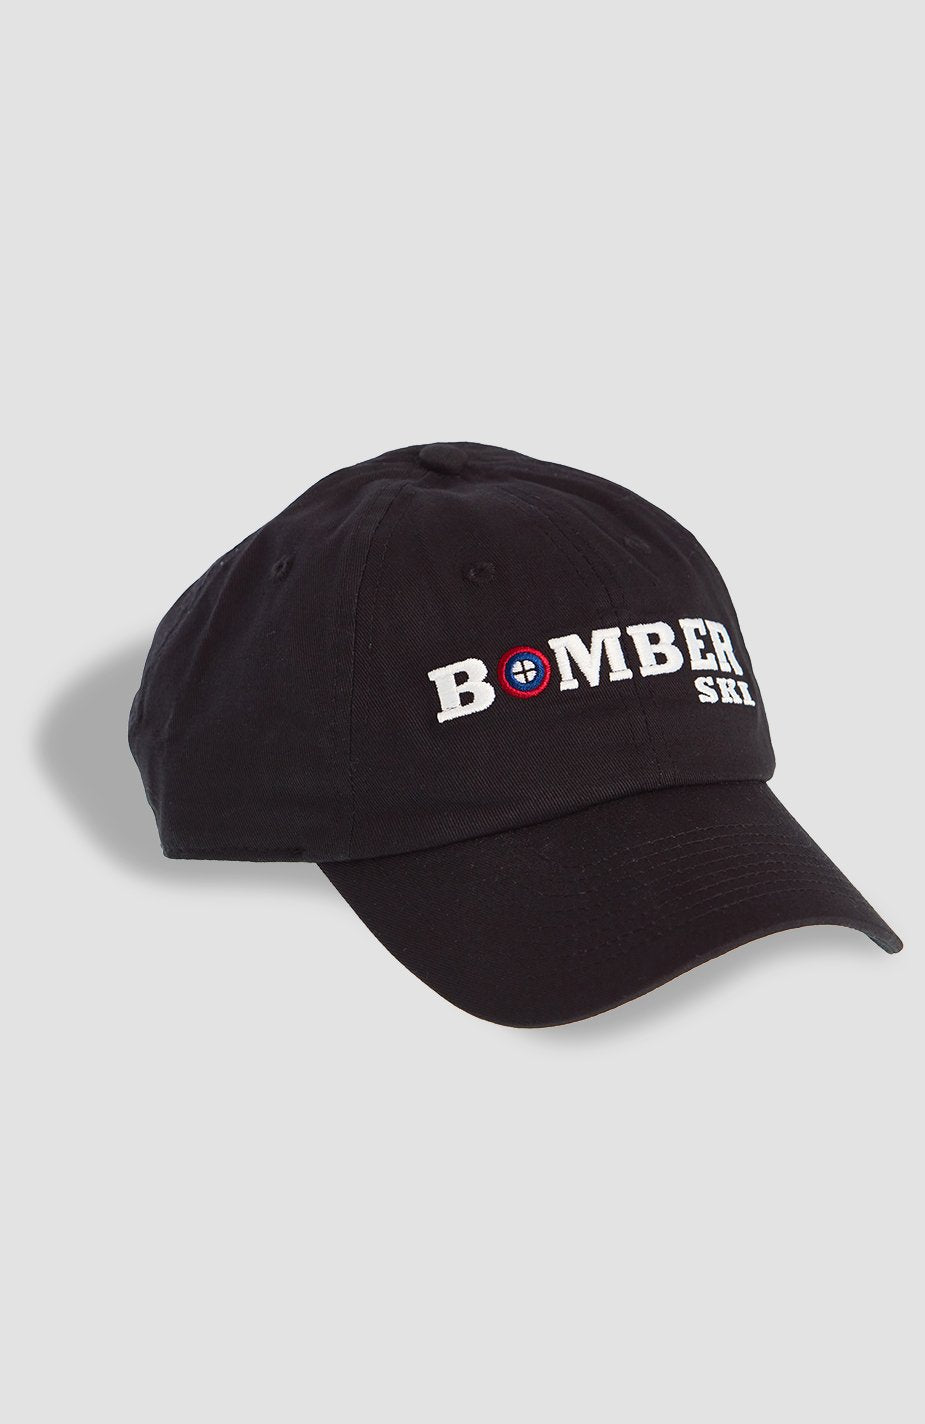 Bomber Ski Cap